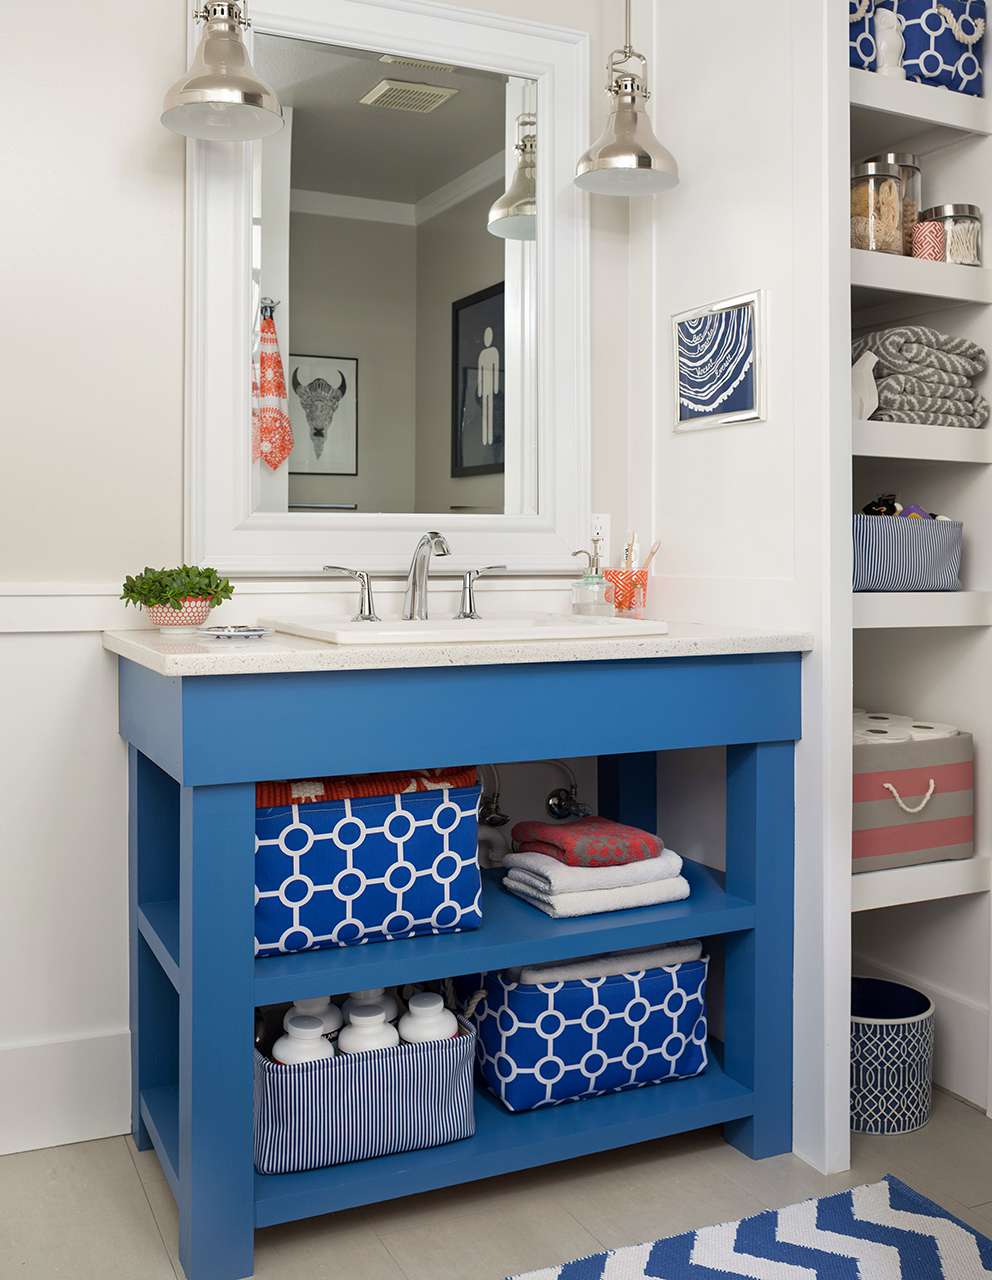 18 Diy Bathroom Vanity Ideas For Custom, Vanity Base For Vessel Sink